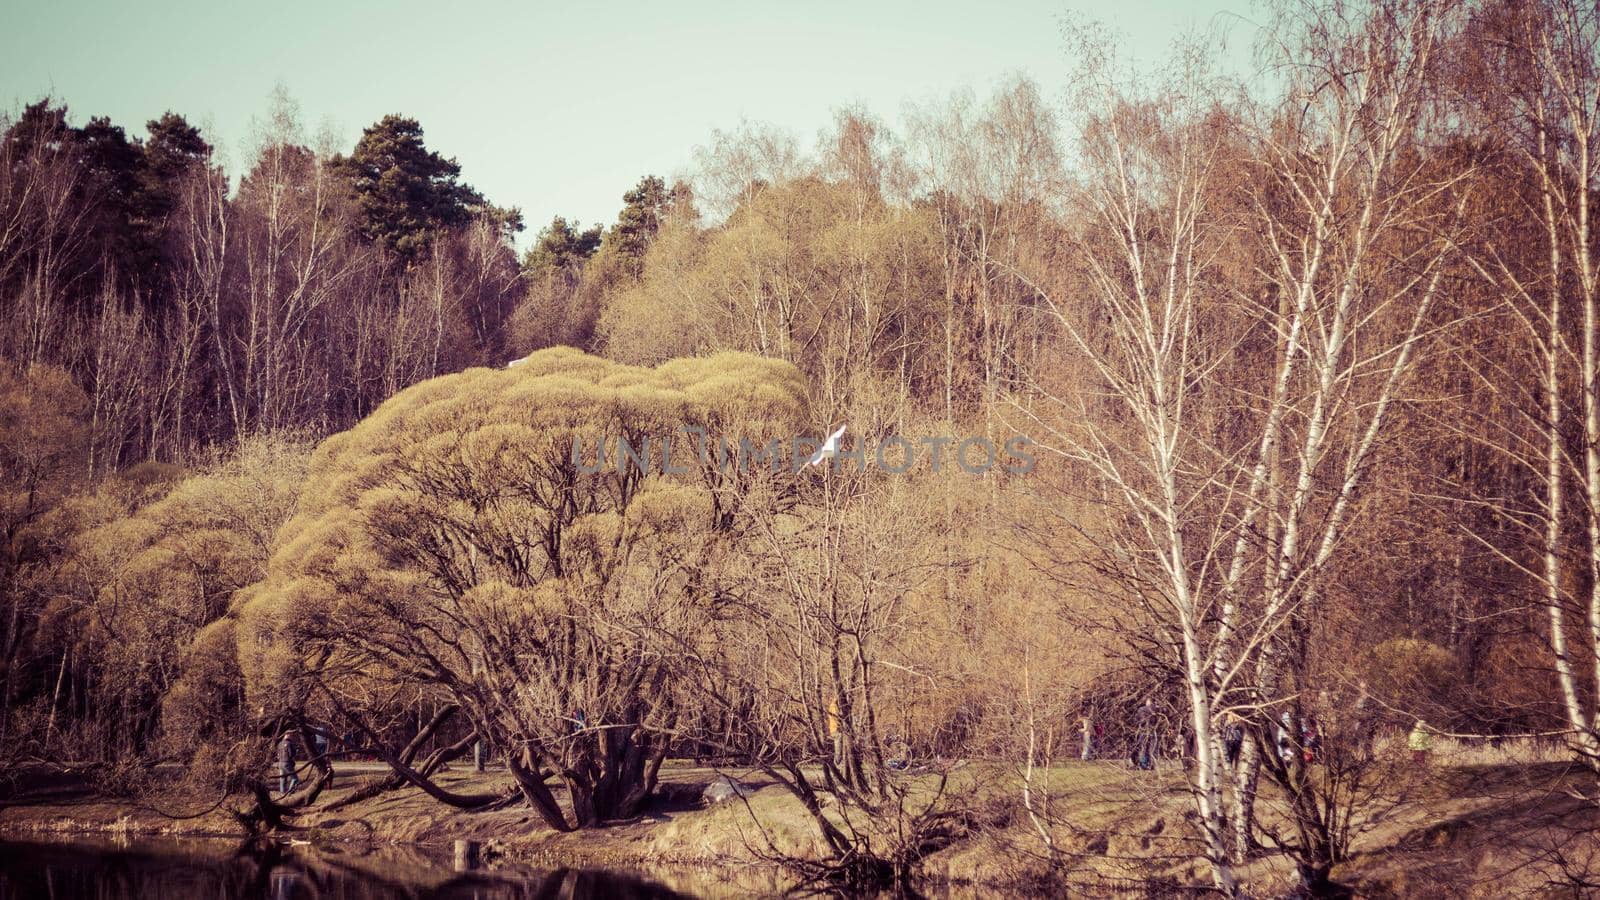 Trees and dry grass on the lake springtime by galinasharapova